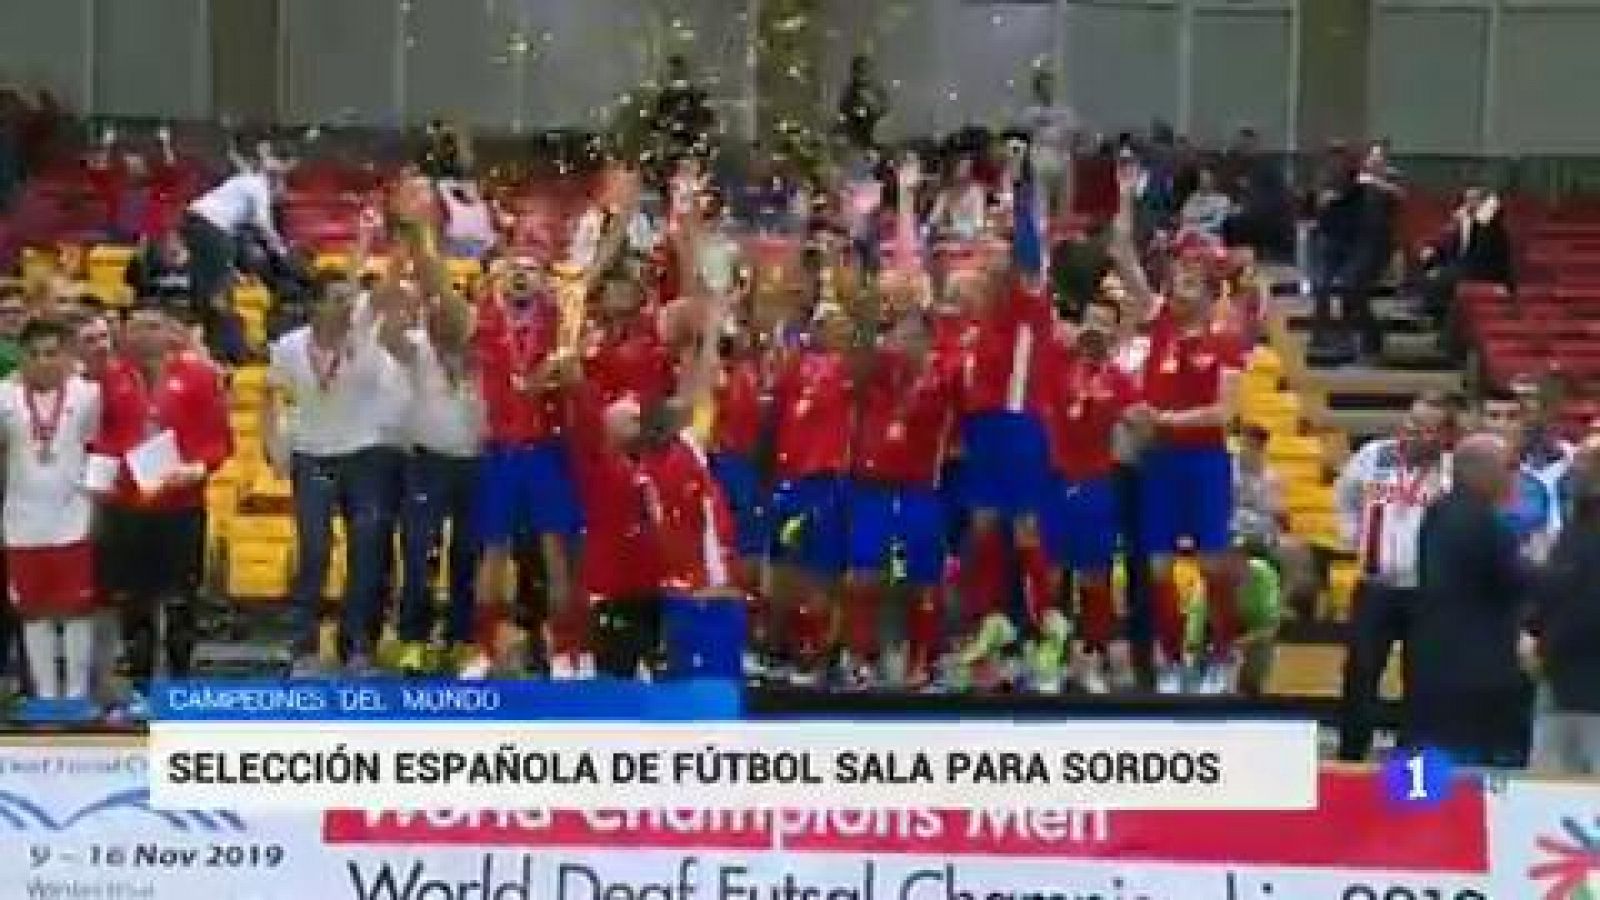 Fútbol sala sordos | España gana el Mundial de fútbol sala para sordos